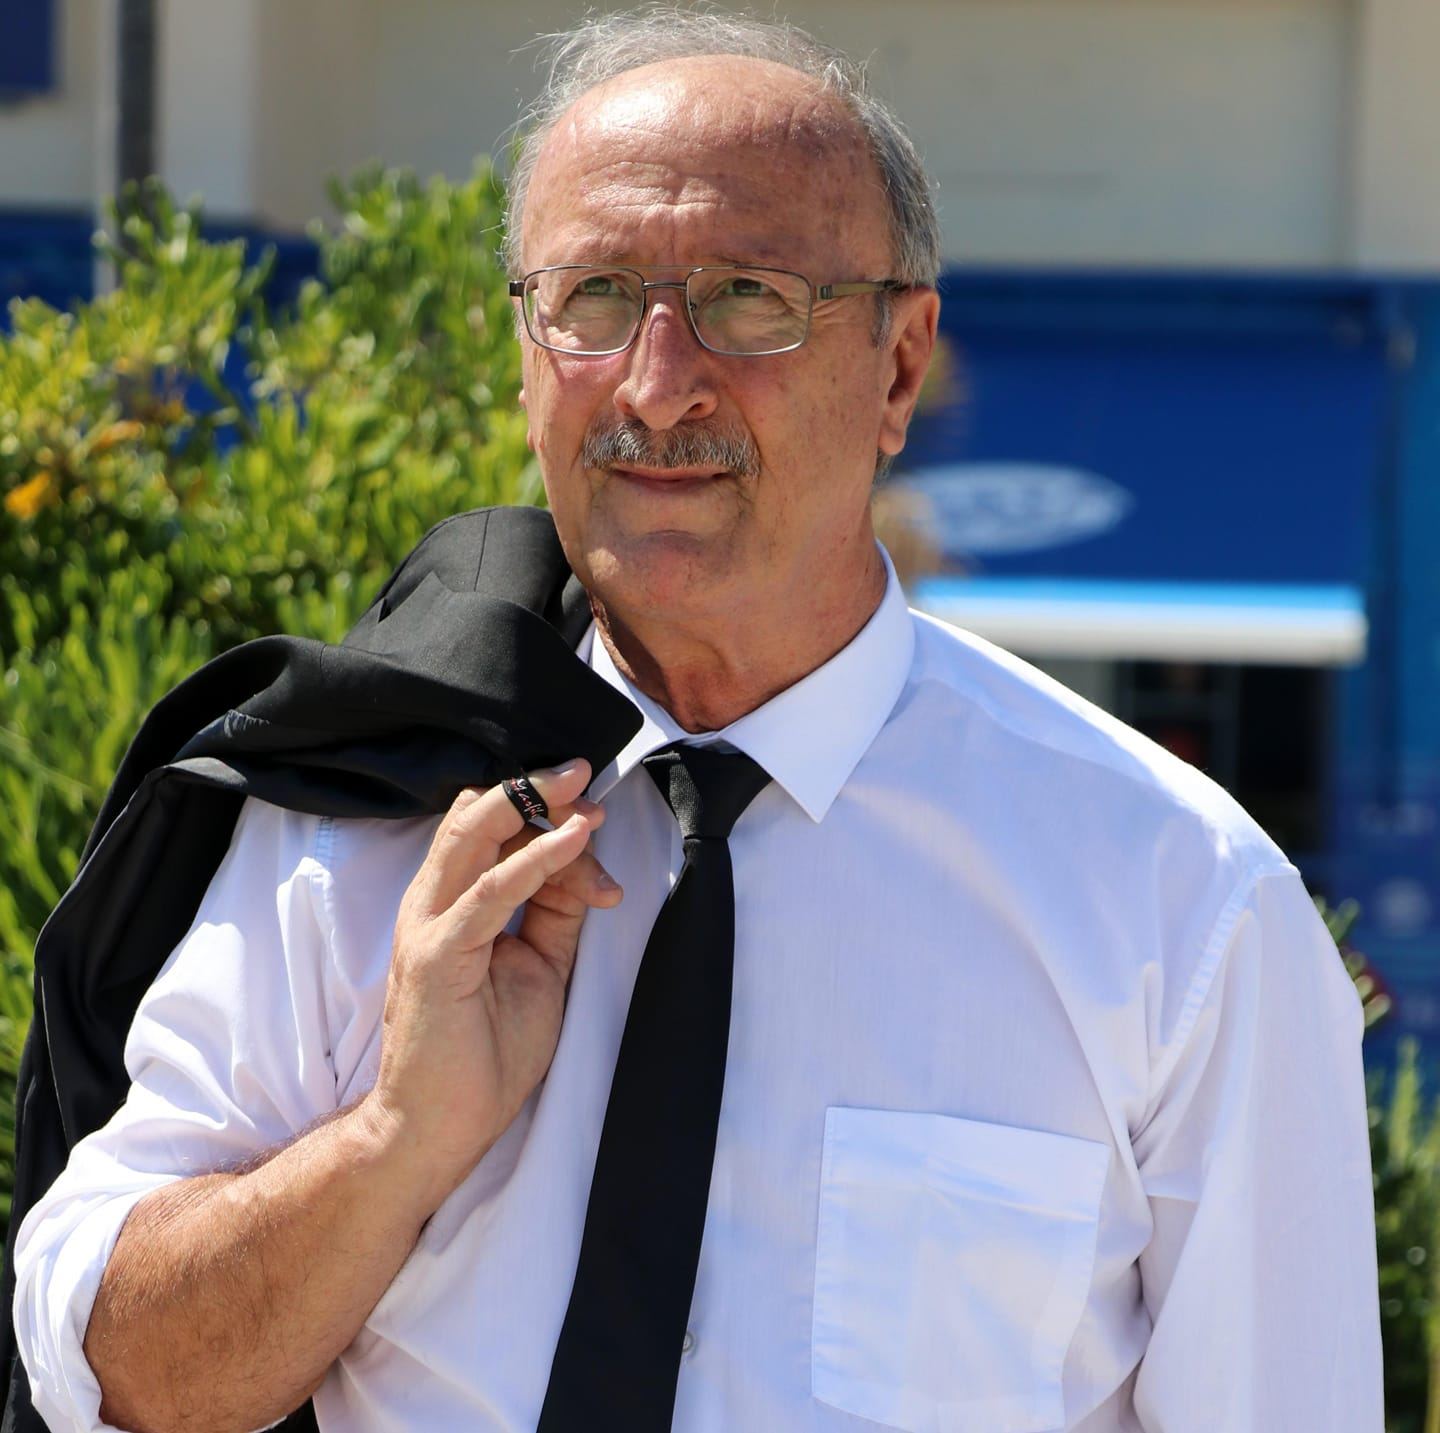 ΕΚΤΑΚΤΟ: Ο Νίκος Καραγιαννίδης στην “Πατριωτική Ενωση” του Πρόδρομου Εμφιετζόγλου